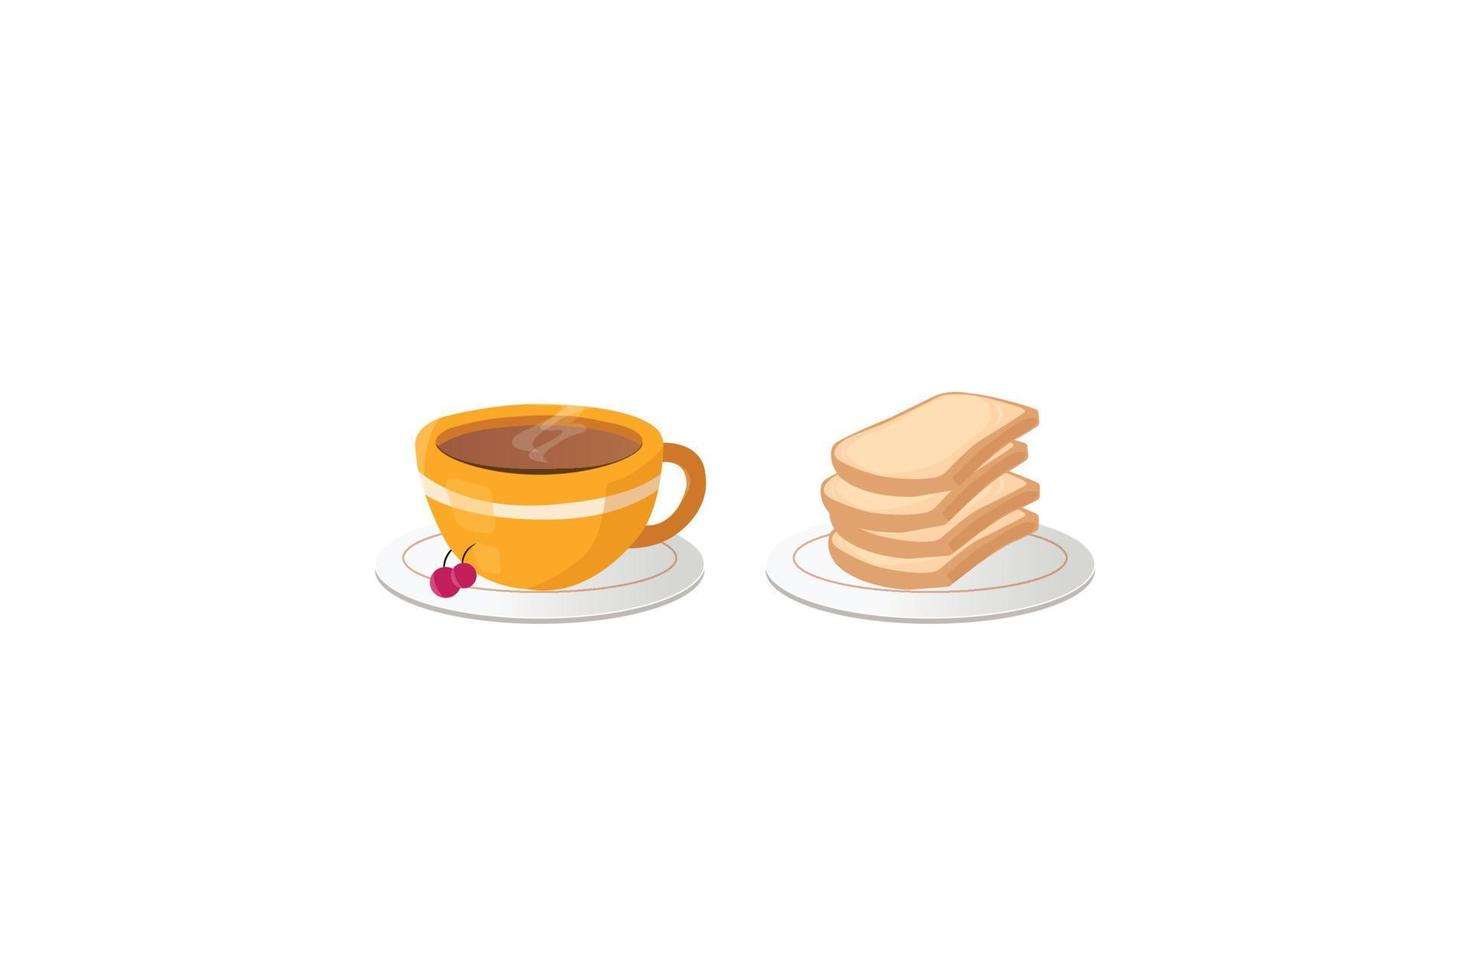 vrij kop van koffie met brood illustratie vector